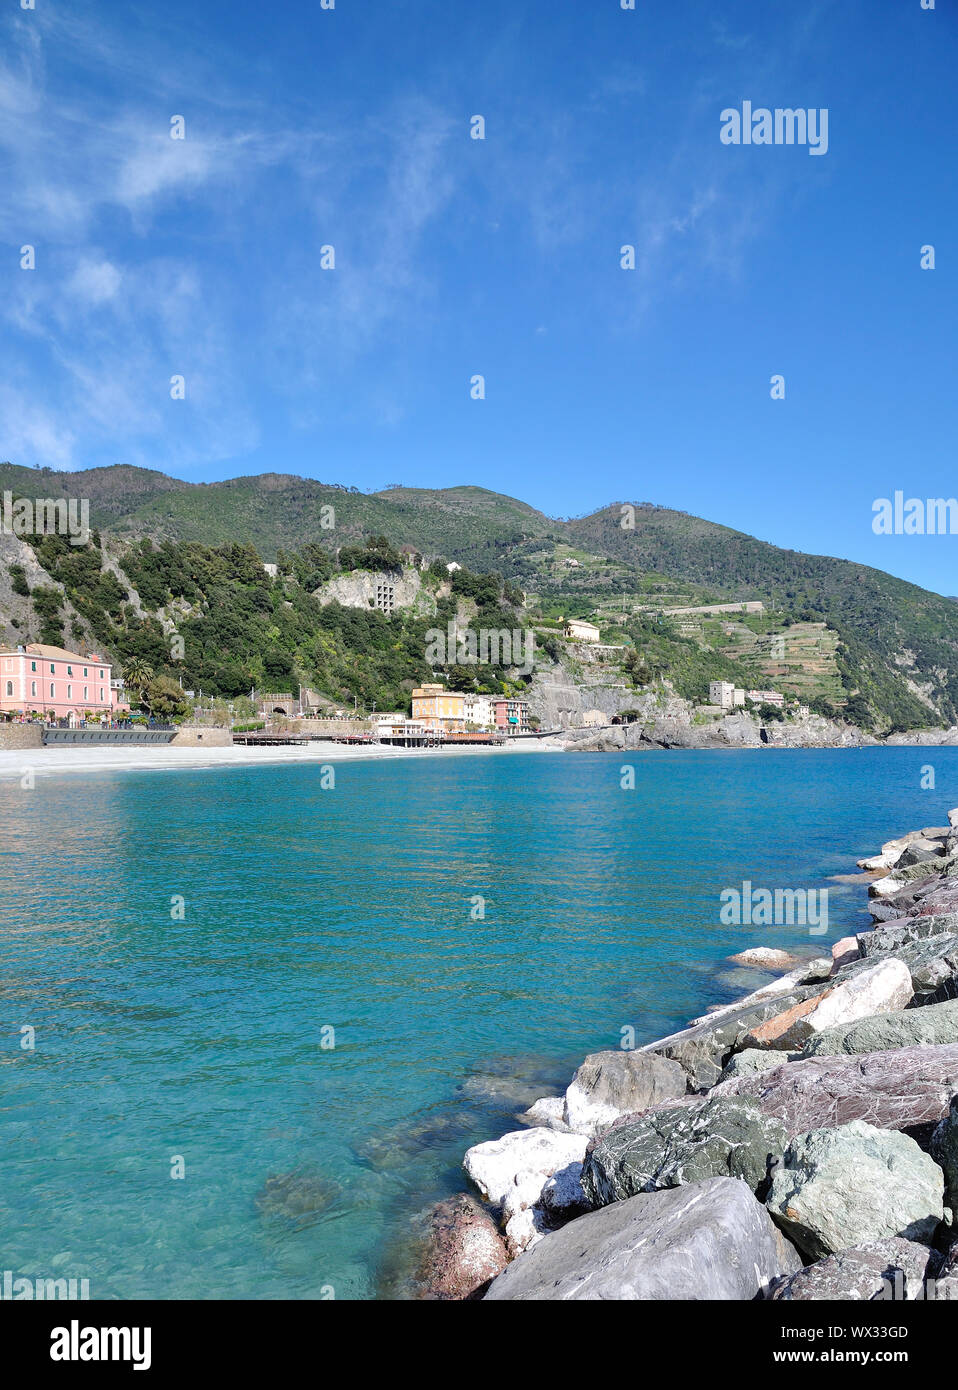 Village of Monterosso al Mare in Cinque Terre at italian Riviera,Liguria,Italy Stock Photo